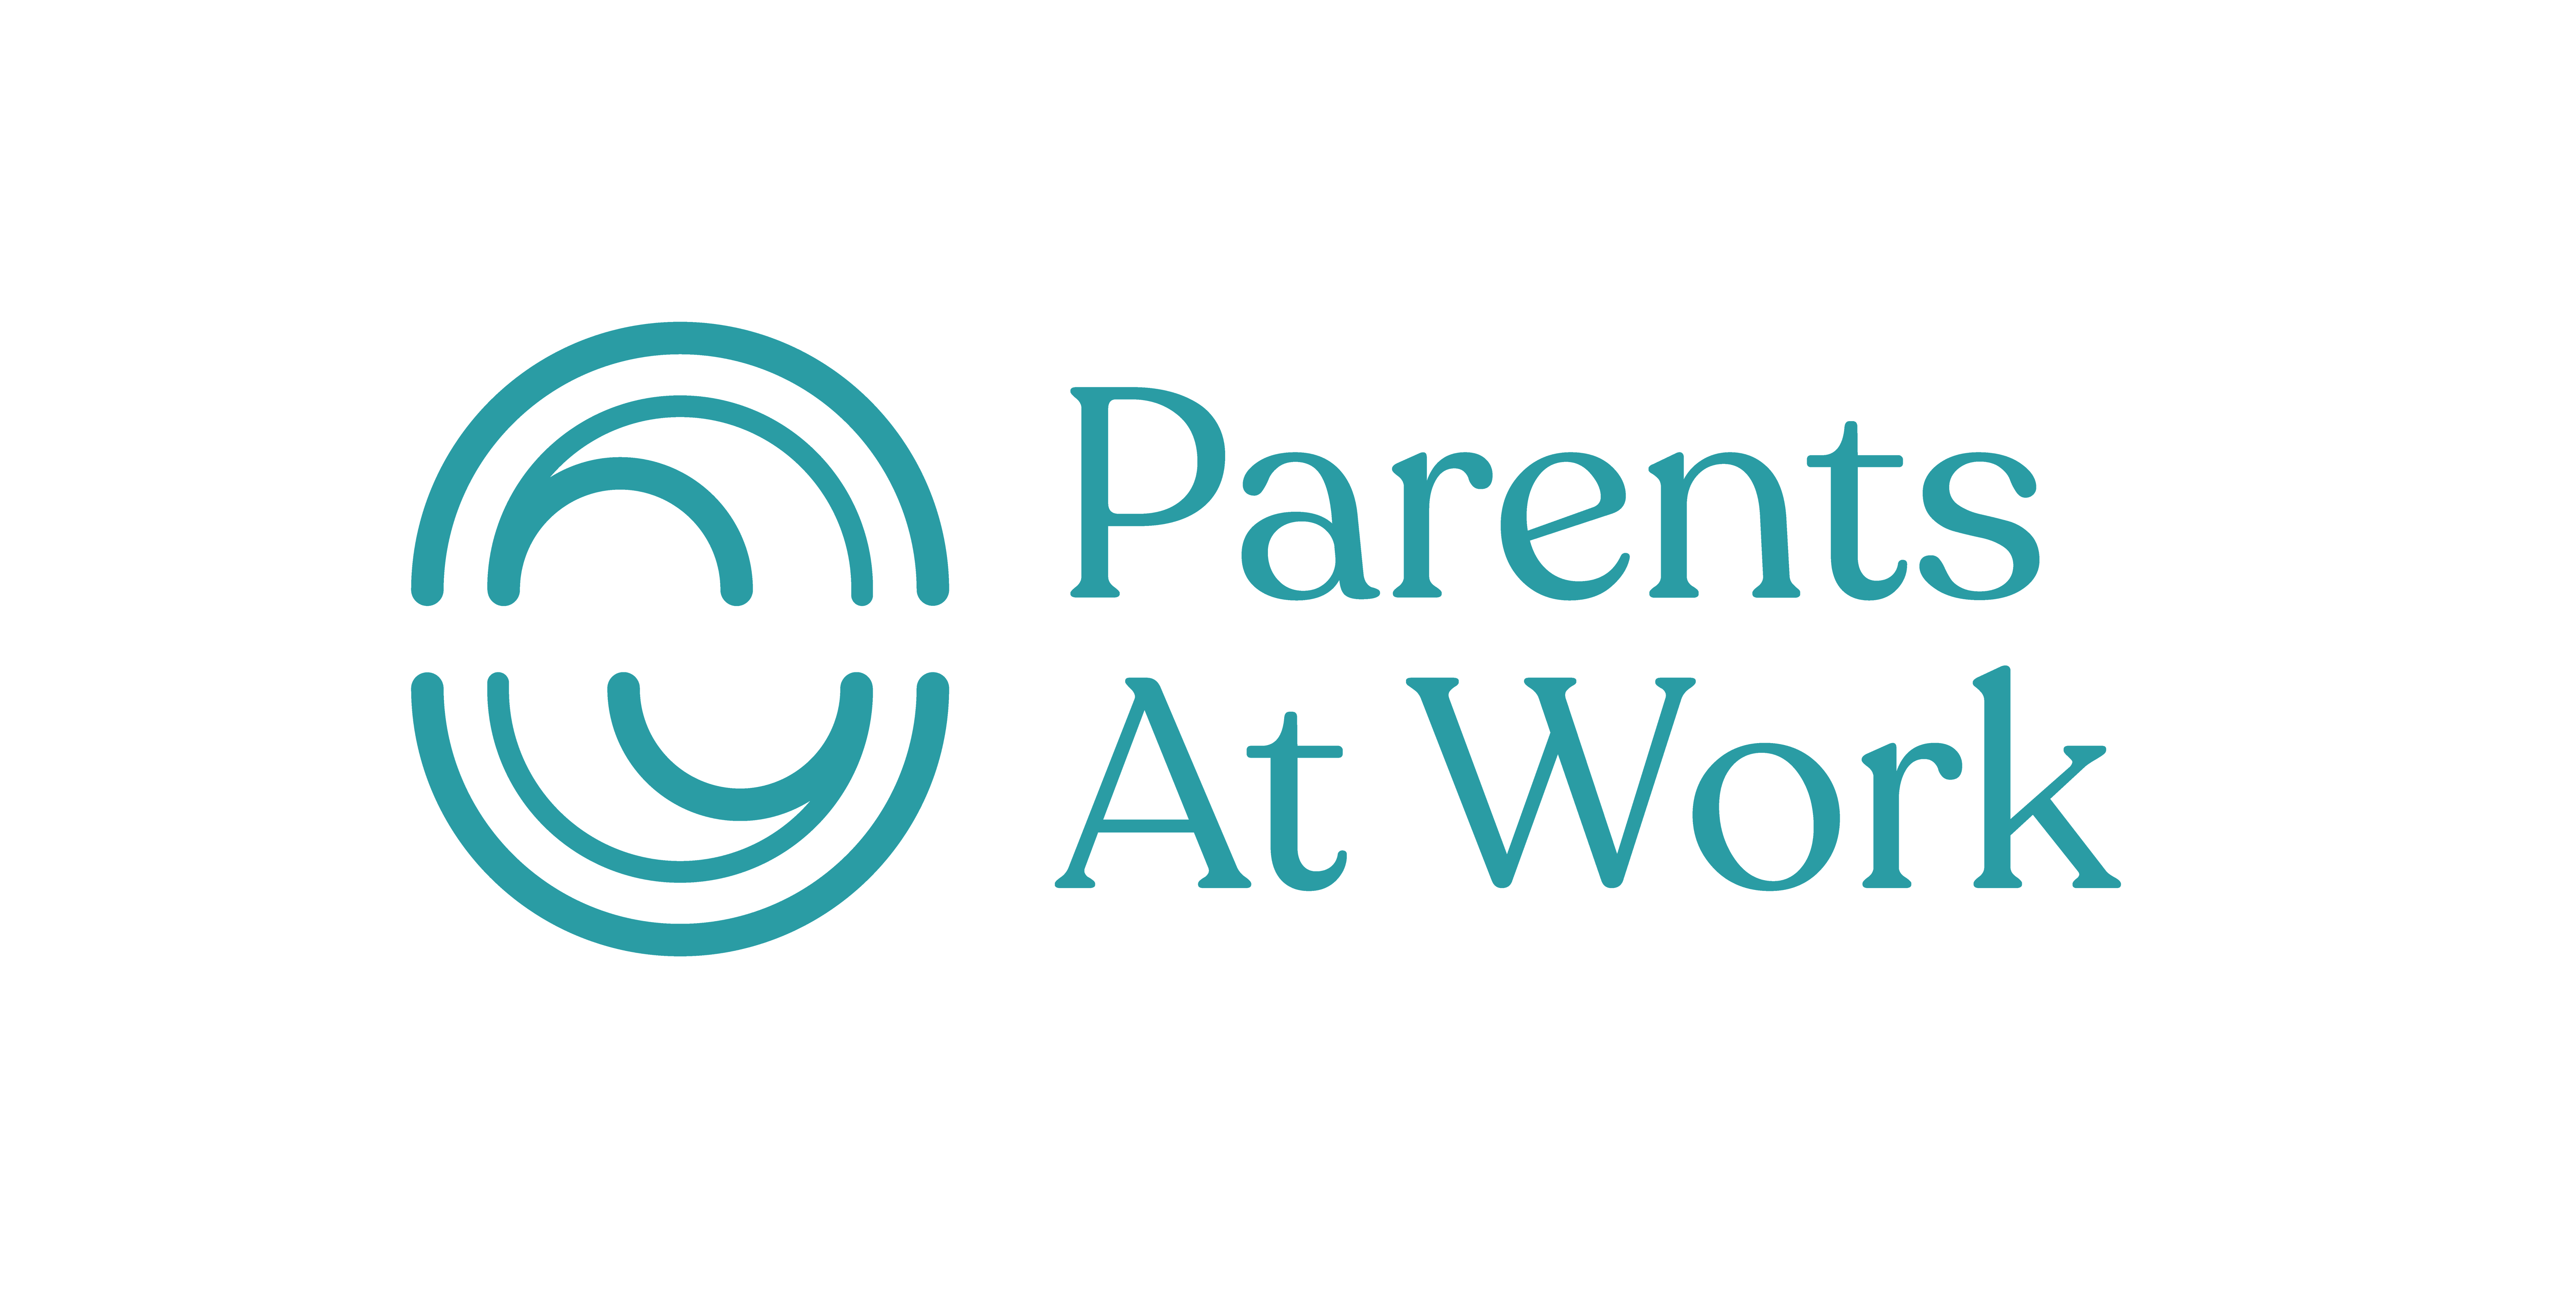 Parents at work logo